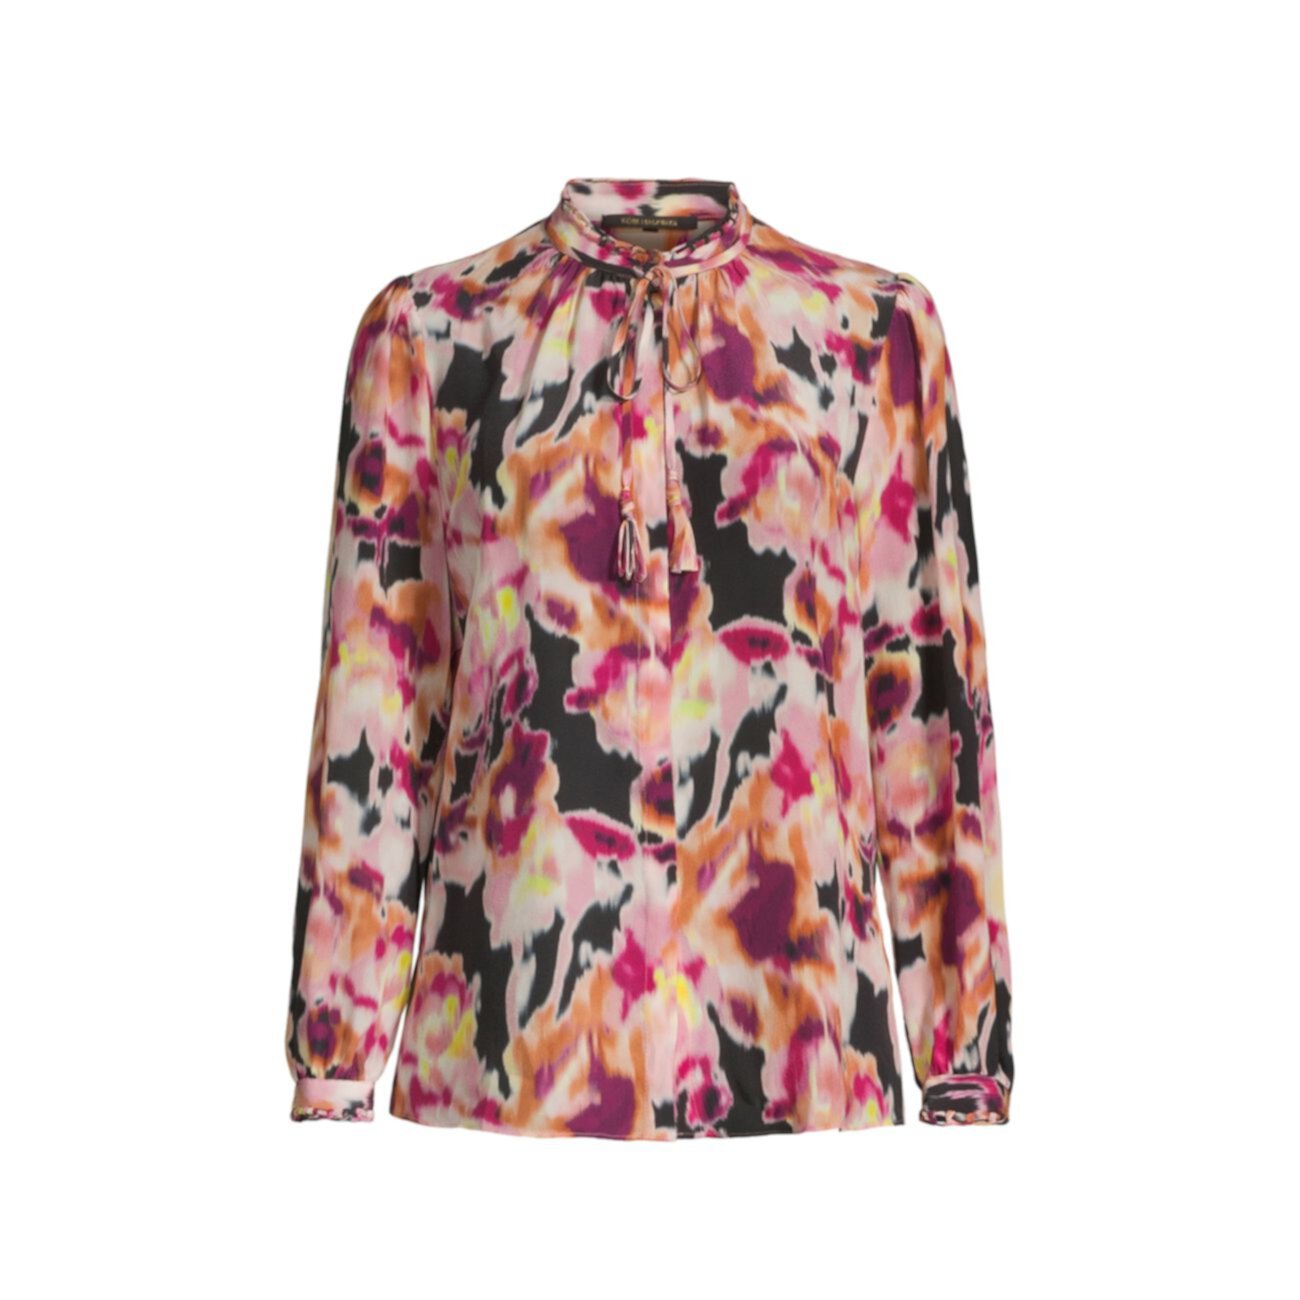 Шелковая блузка с цветочным принтом Mabel Kobi Halperin